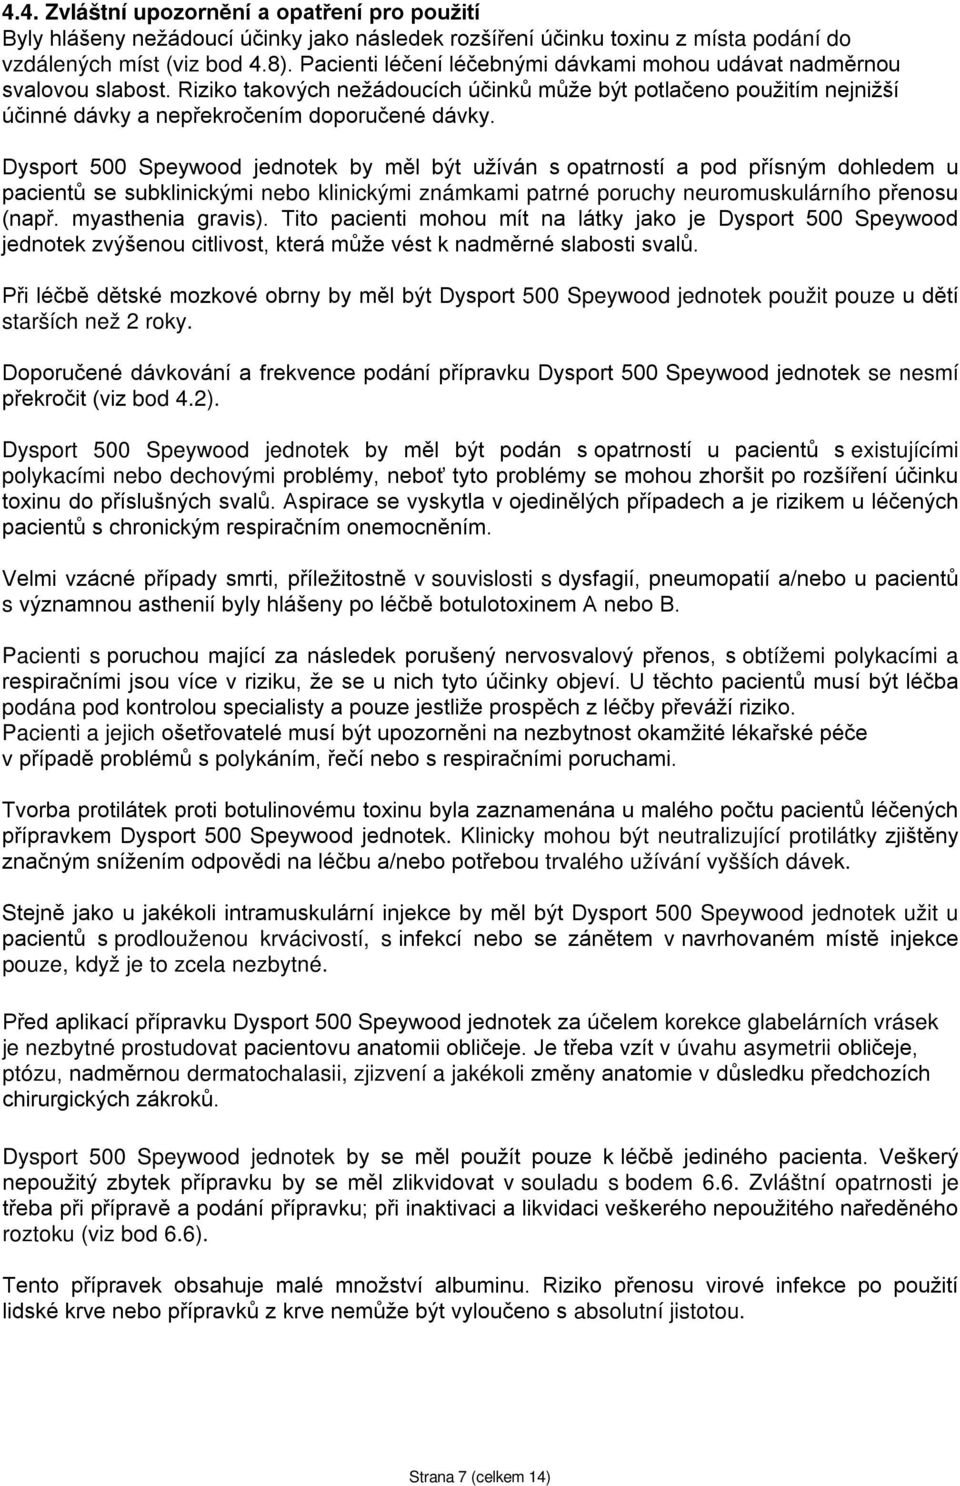 Dysport 500 Speywood jednotek by měl být užíván s opatrností a pod přísným dohledem u pacientů se subklinickými nebo klinickými známkami patrné poruchy neuromuskulárního přenosu (např.